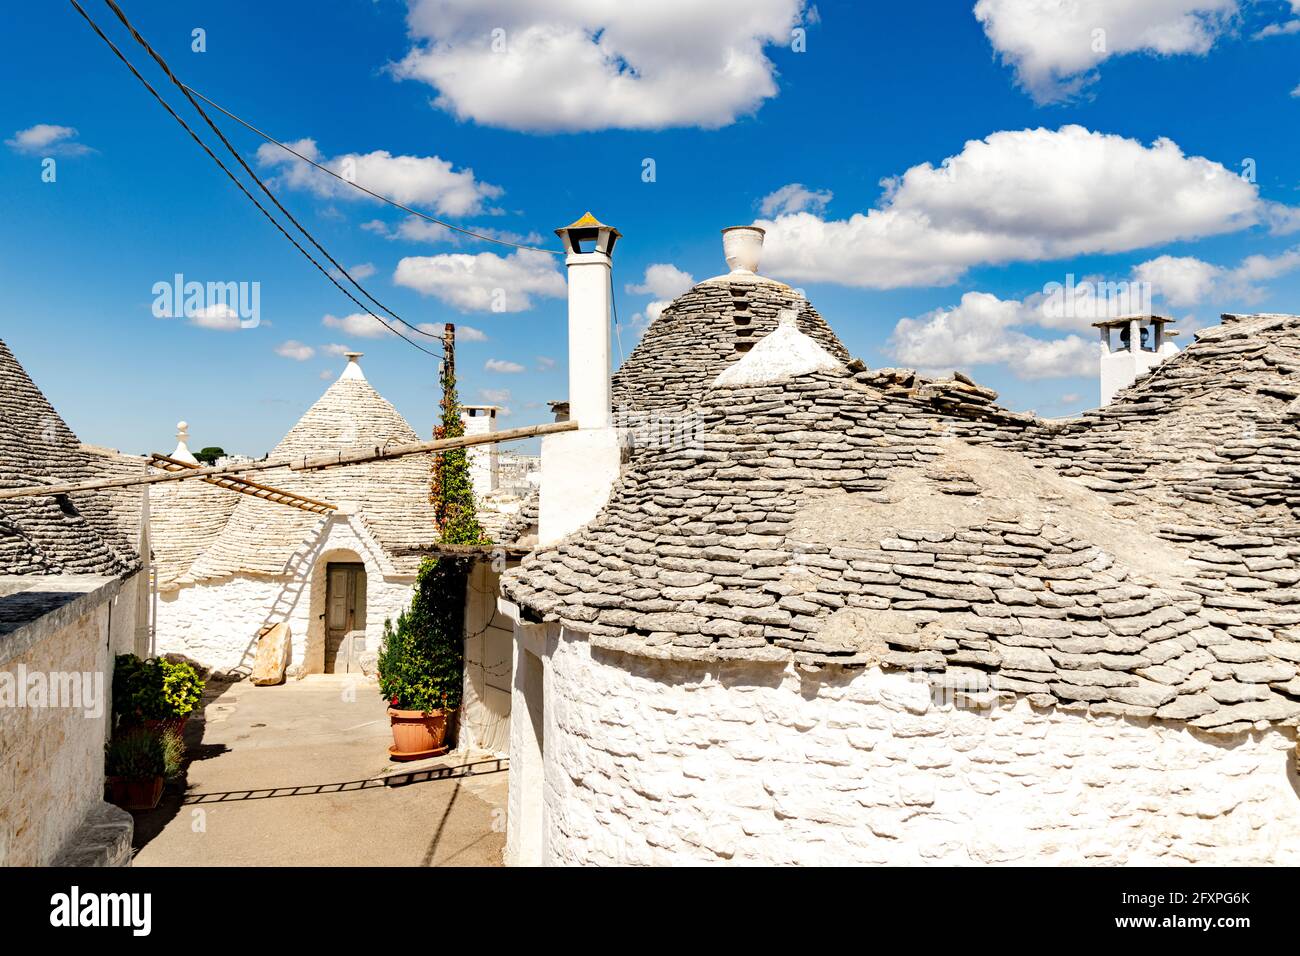 Le tradizionali case bianche dei Trulli, Alberobello, Patrimonio dell'Umanità dell'UNESCO, provincia di Bari, Puglia, Italia, Europa Foto Stock